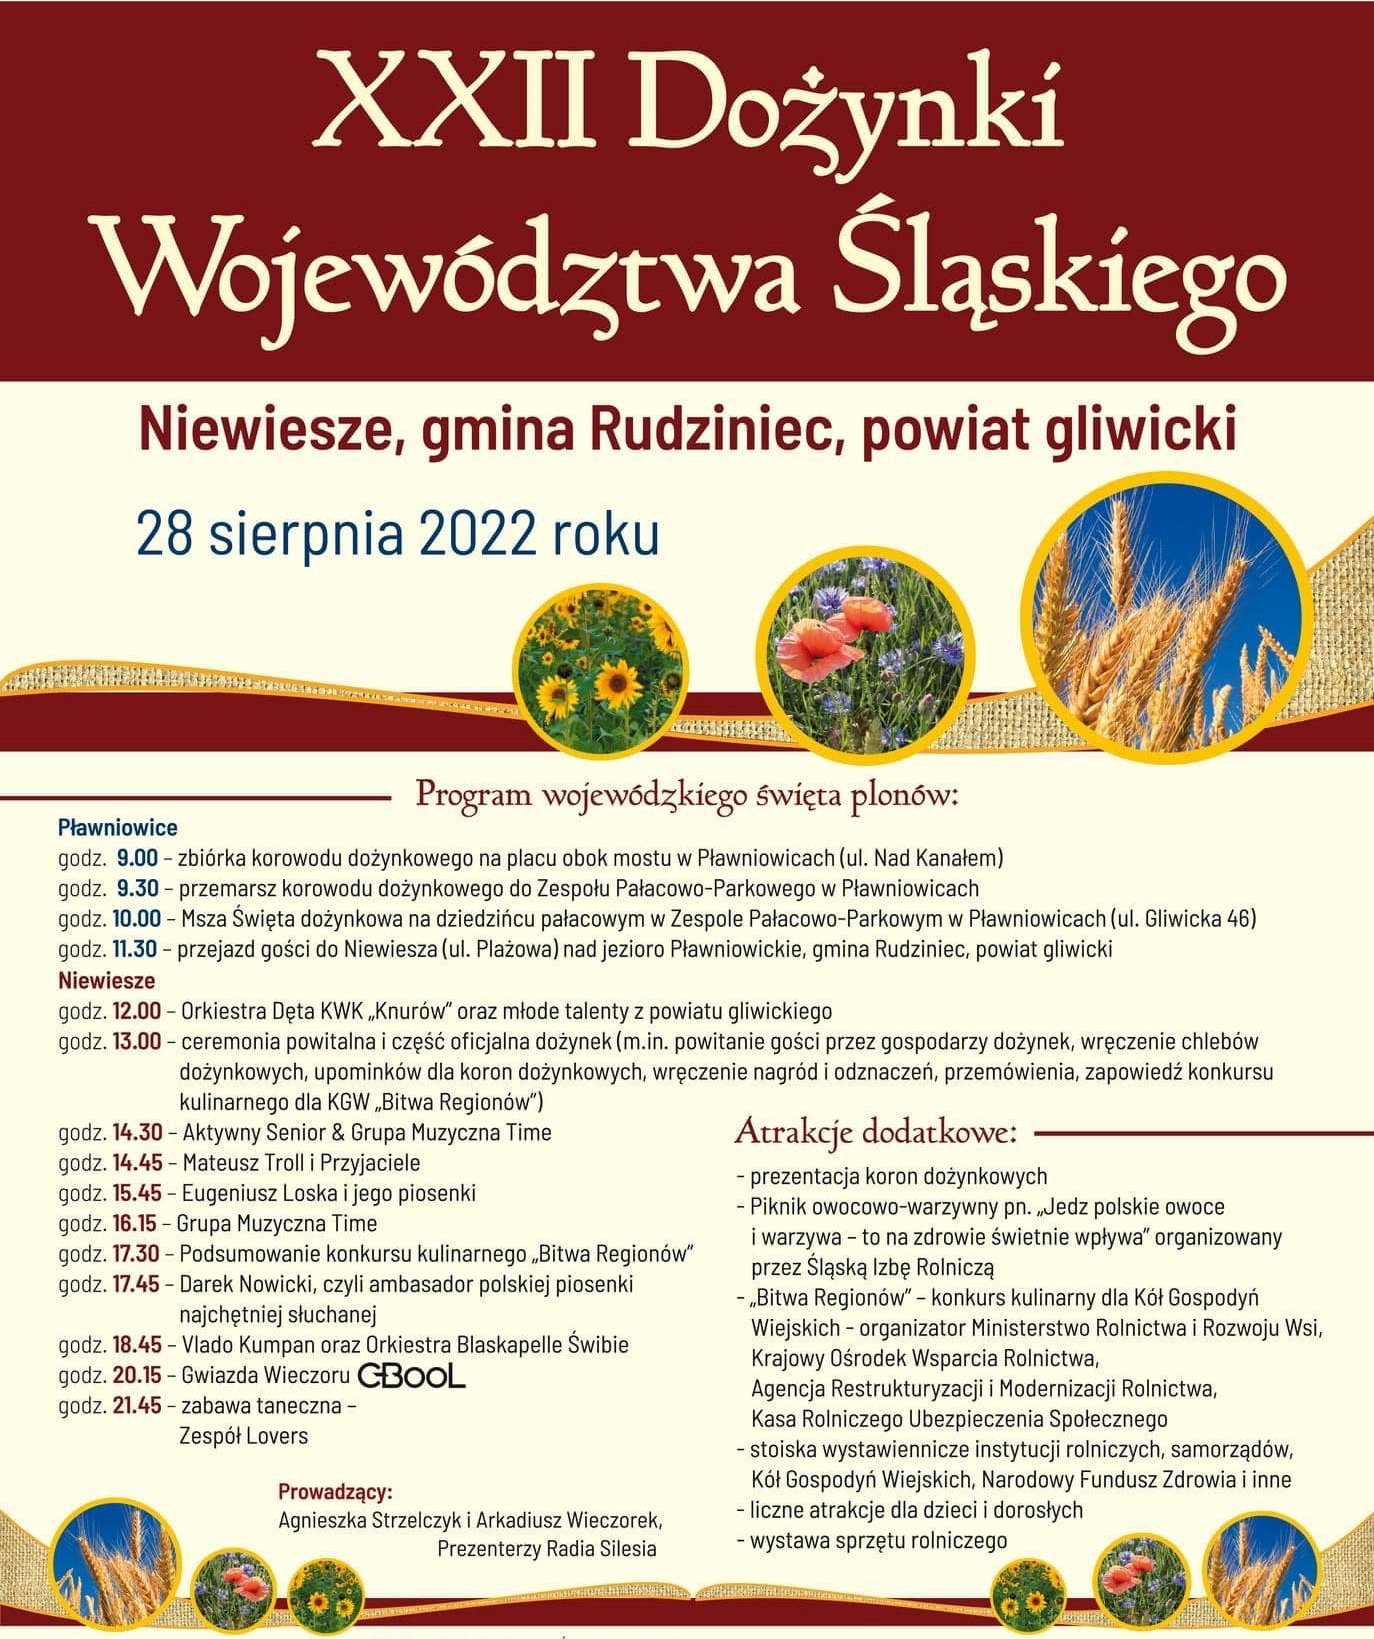 plakat zawierający informacje o XXII Dożynkach Województwa Śląskiego, program święta plonów.